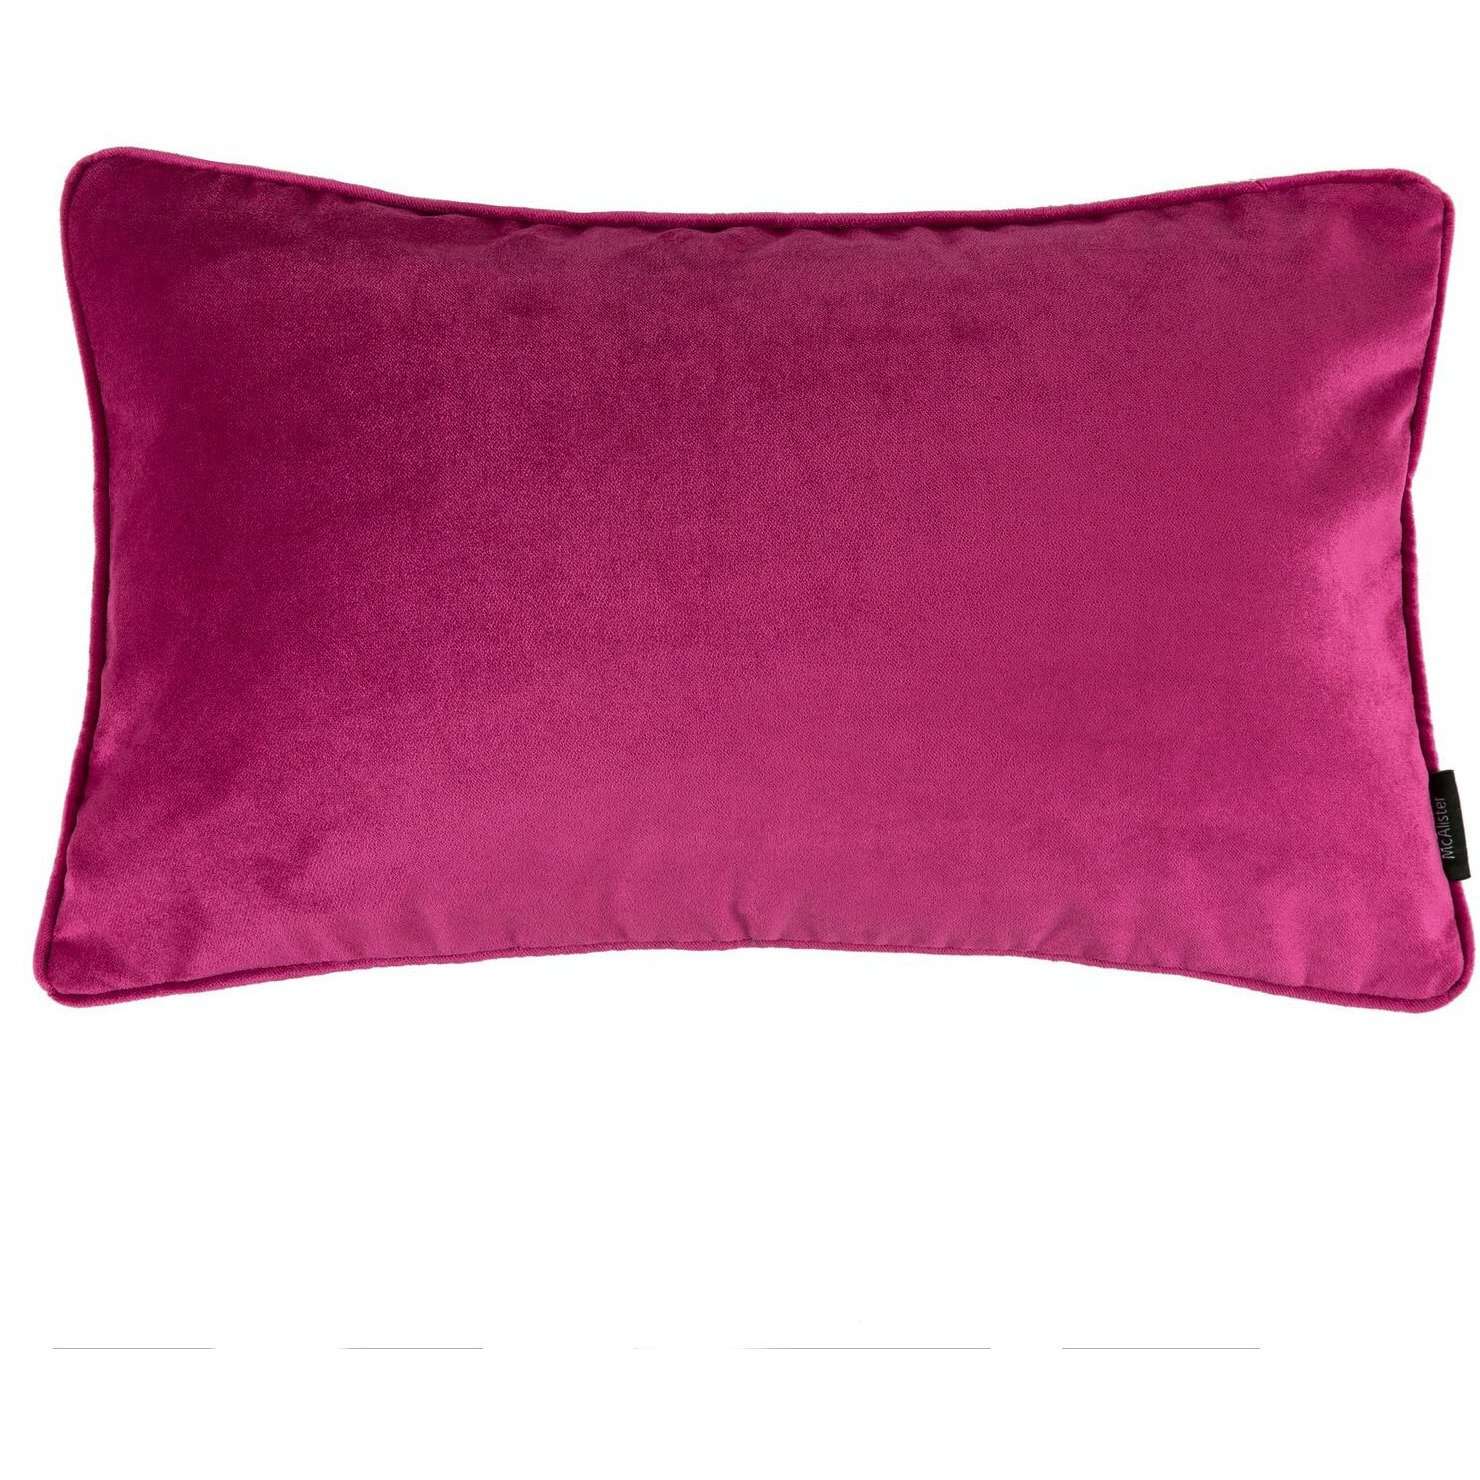 McAlister Textiles Matt Fuchsia Pink Piped Velvet Pillow Pillow Cover Only 50cm x 30cm 